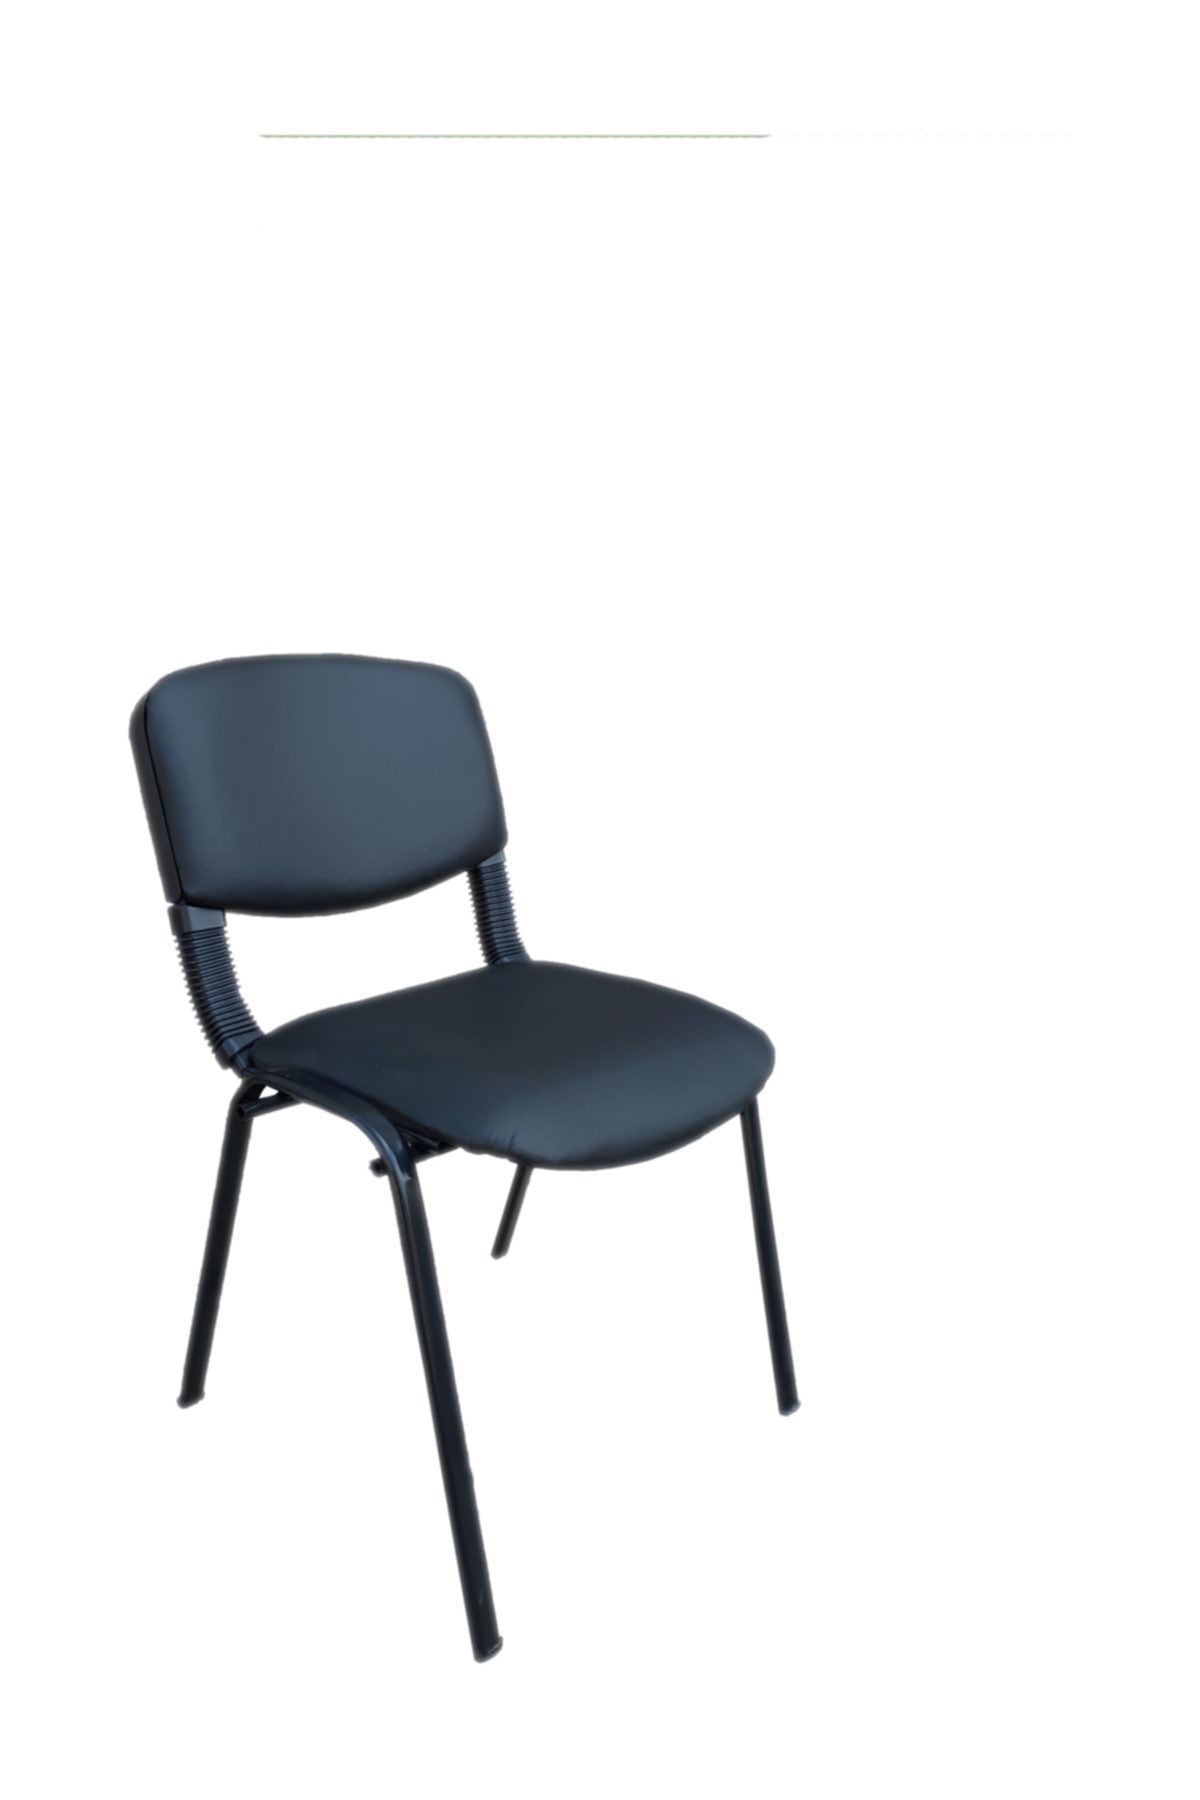 Arm Öğretmen Sandalyesi Büro Ofis Sandalyesi Toplantı Sandalyesi Form Sandalye Misafir Bekleme Sandalye